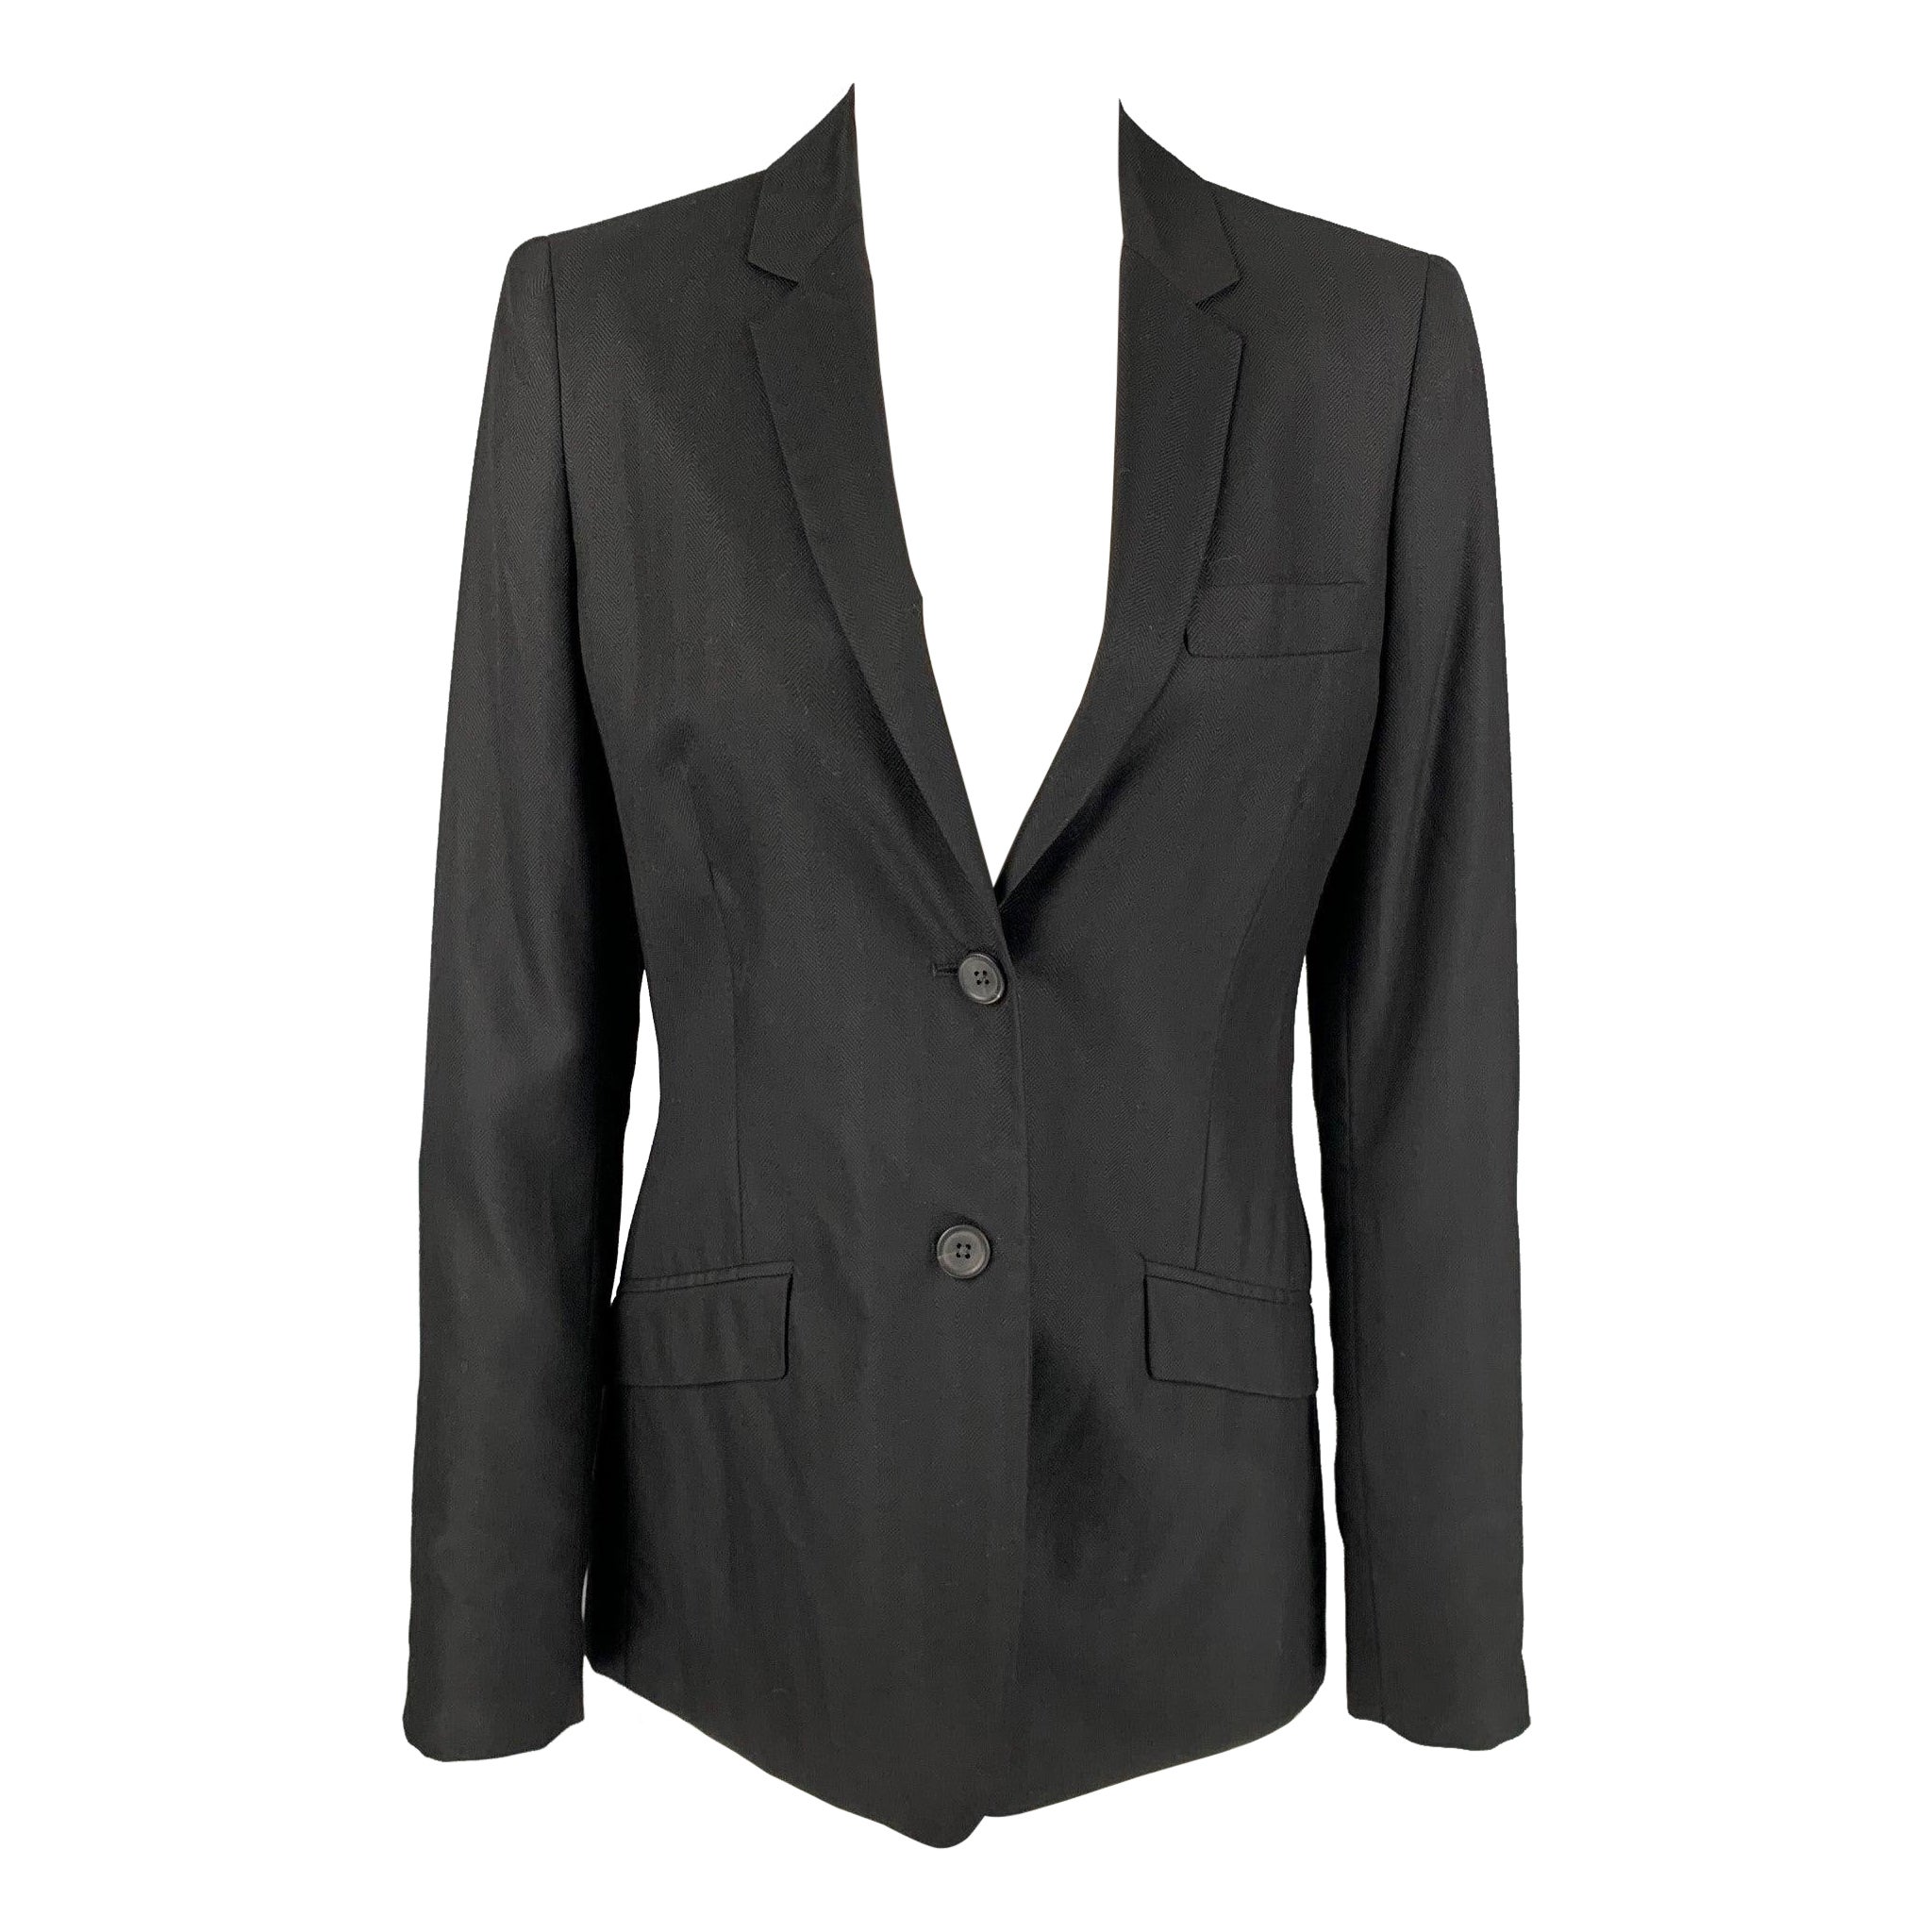 CALVIN KLEIN COLLECTION Size 6 Black Cashmere / Silk Jacke Blazer For Sale